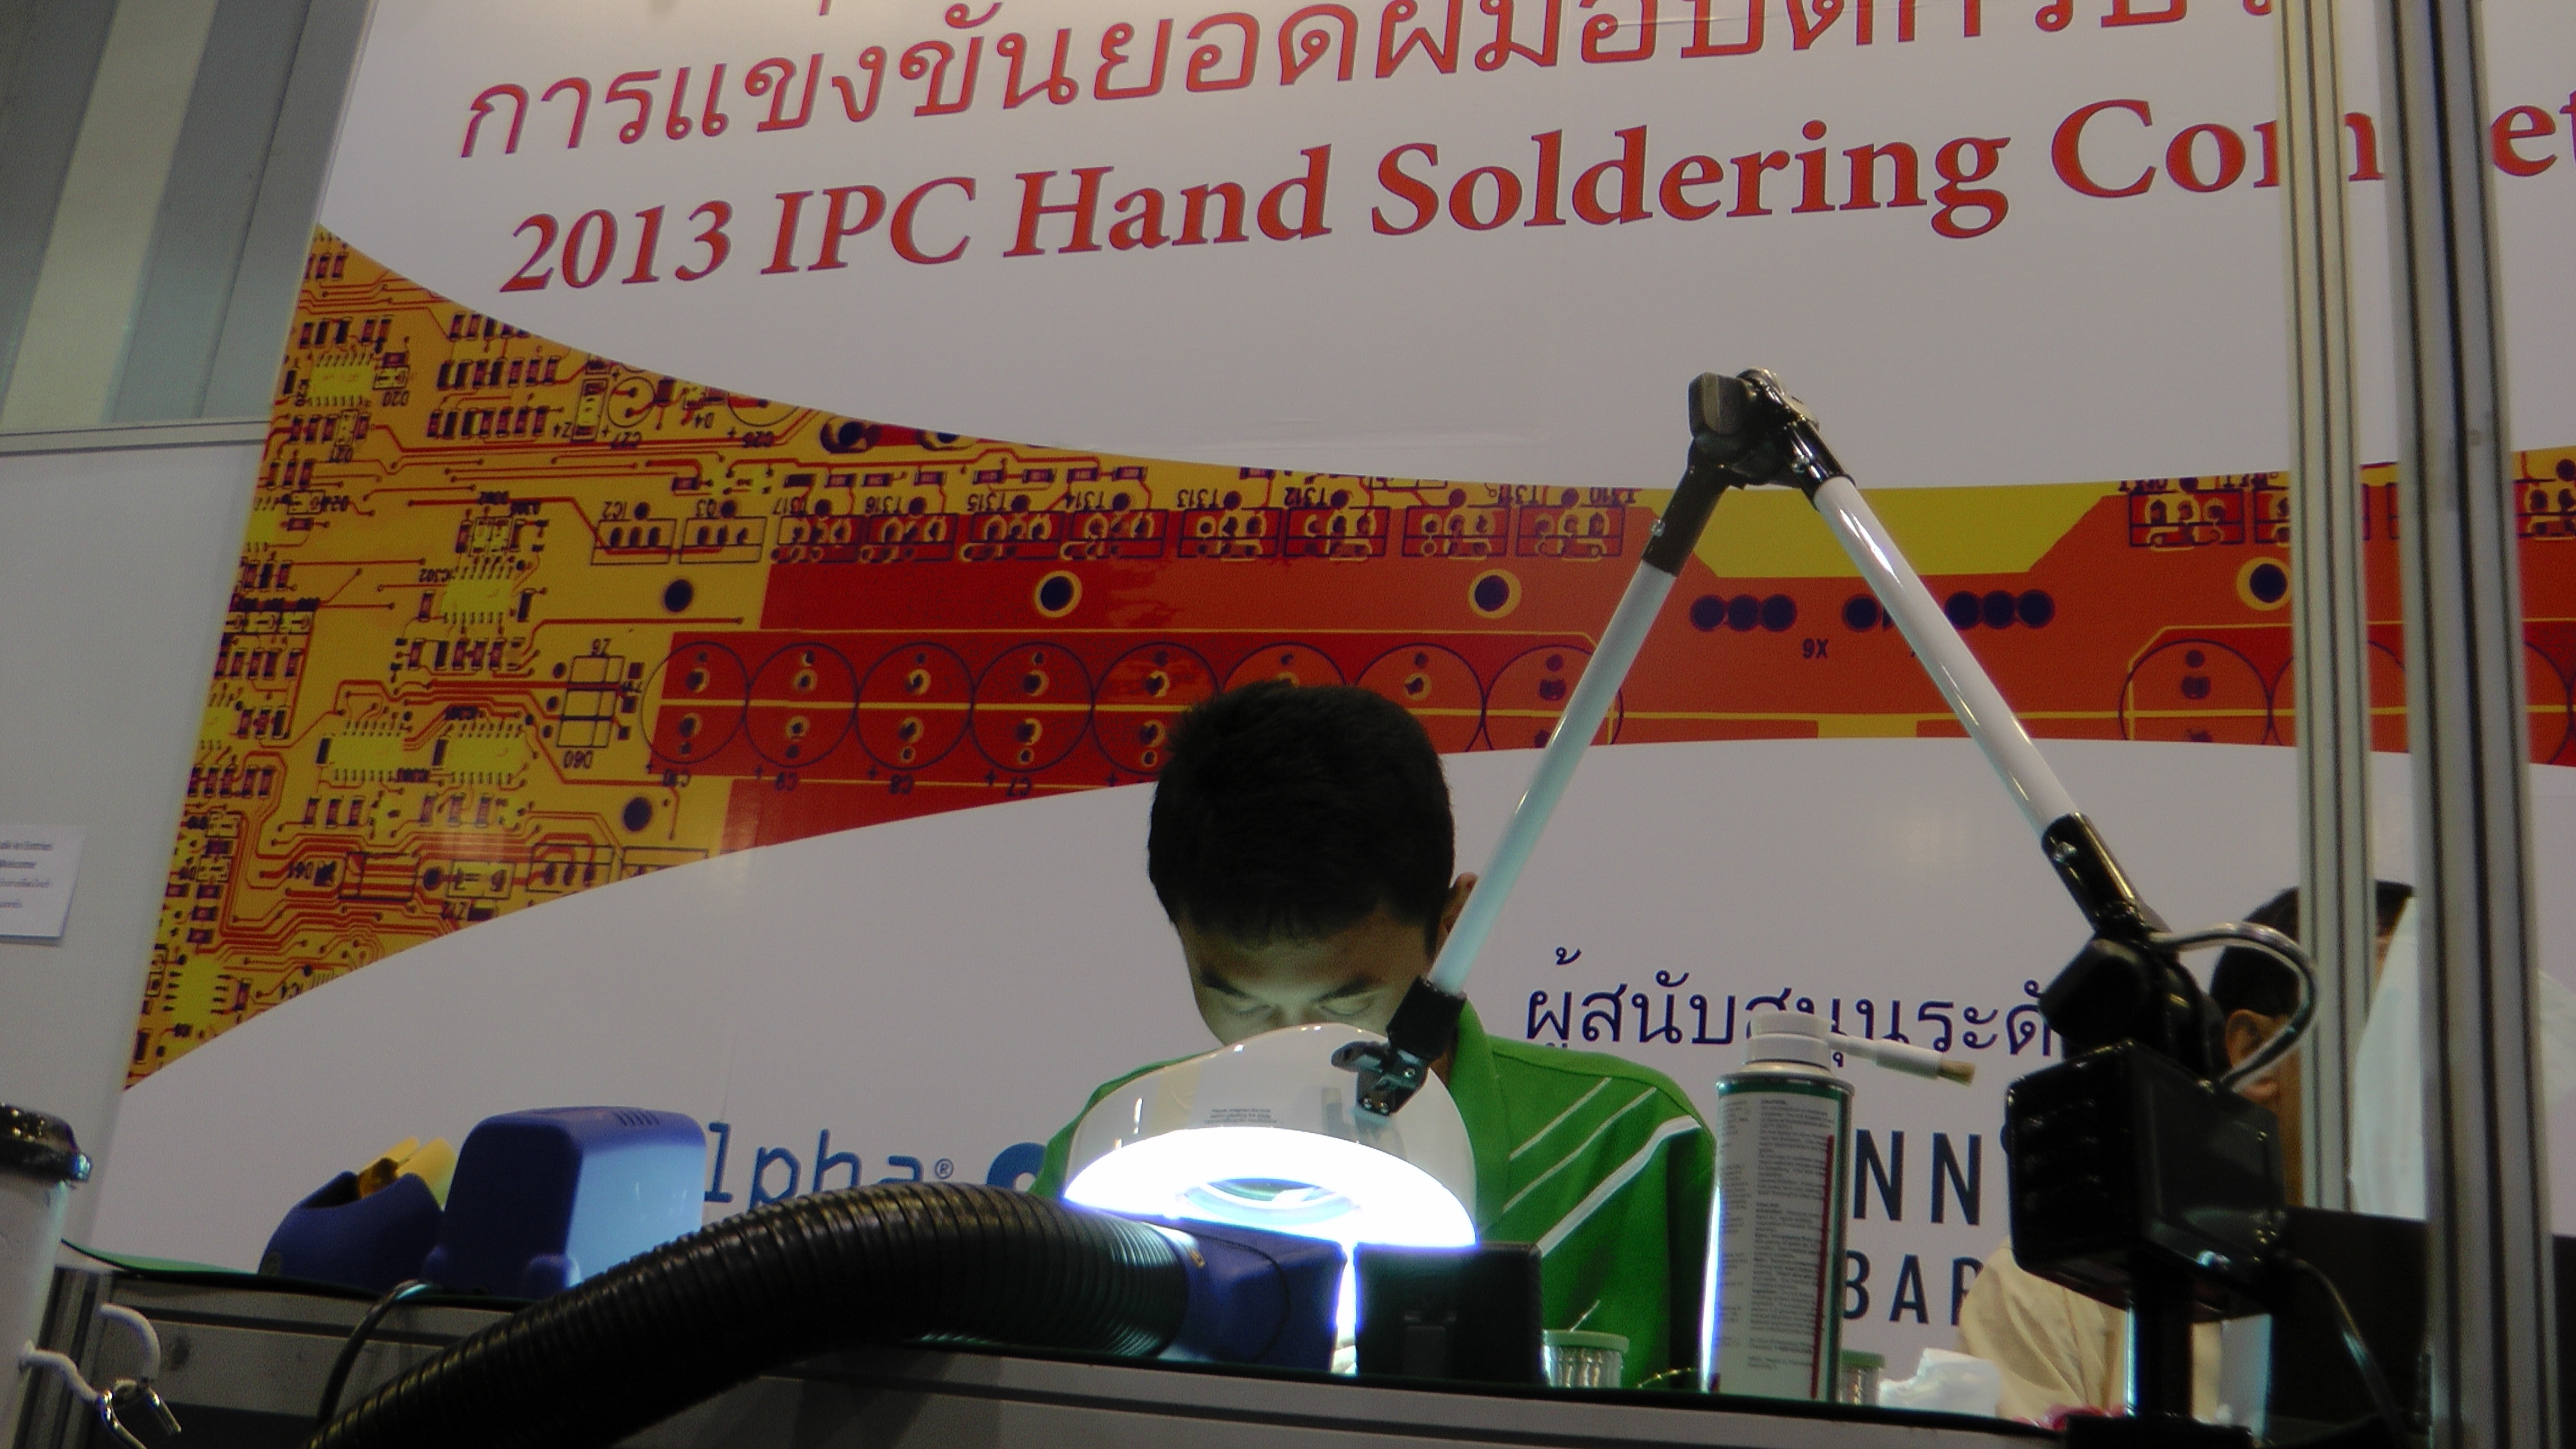 ทีมวิชาการเข้าร่วมแข่งขันยอดฝีมือบัดกรีประเทศไทย IPC 2013